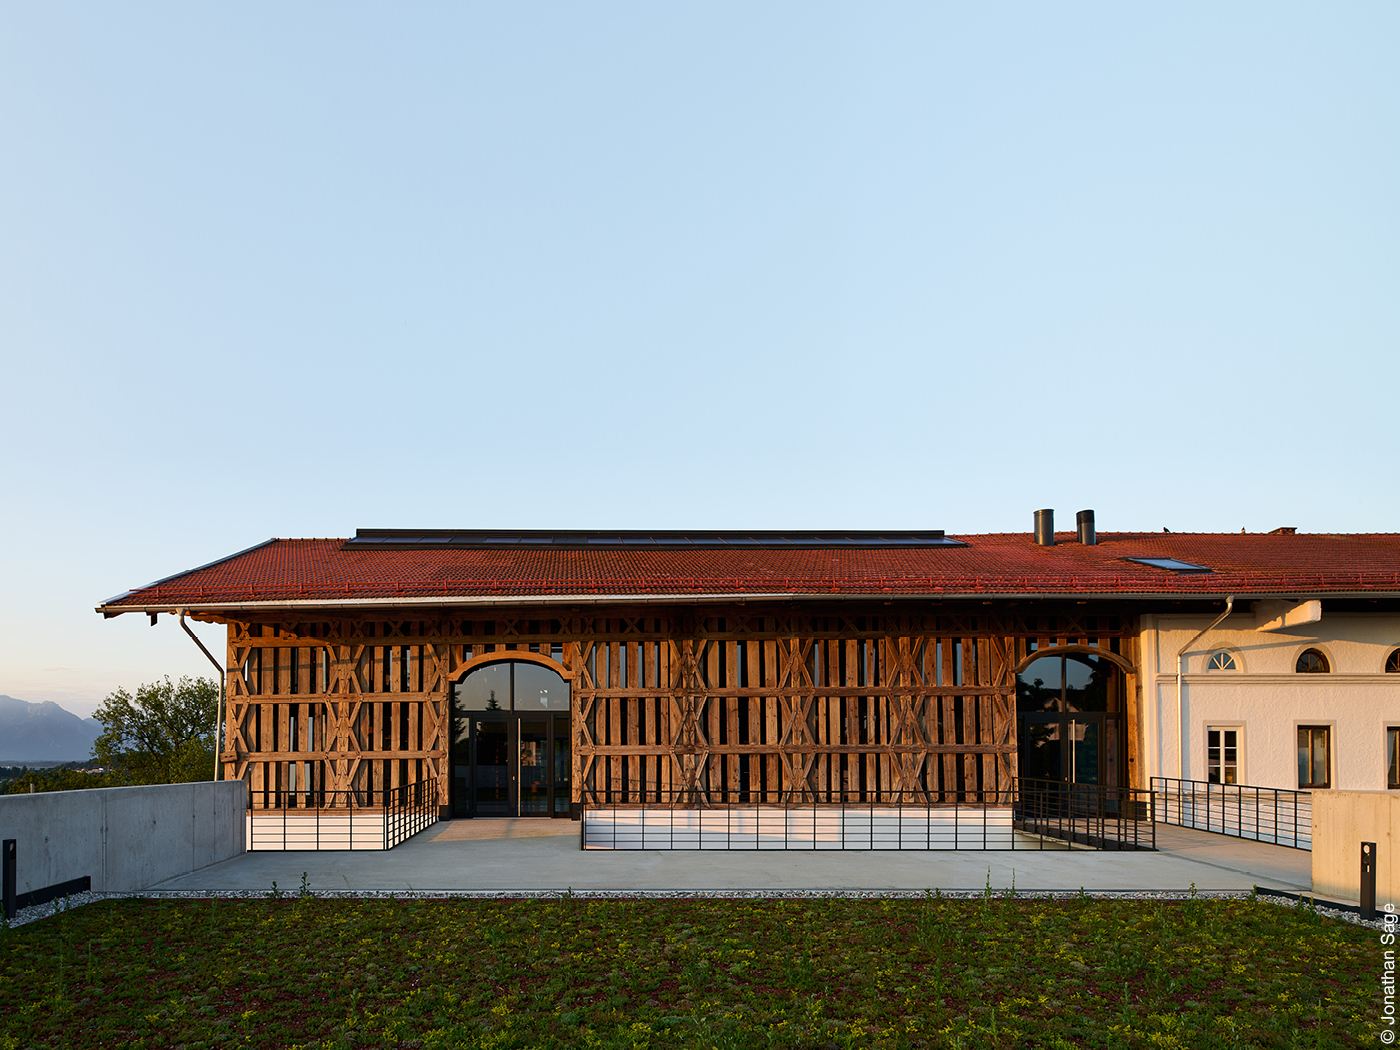 Flaches Haus mit kunstvoller Holzfassade, davor Rasen, dahinter Berge